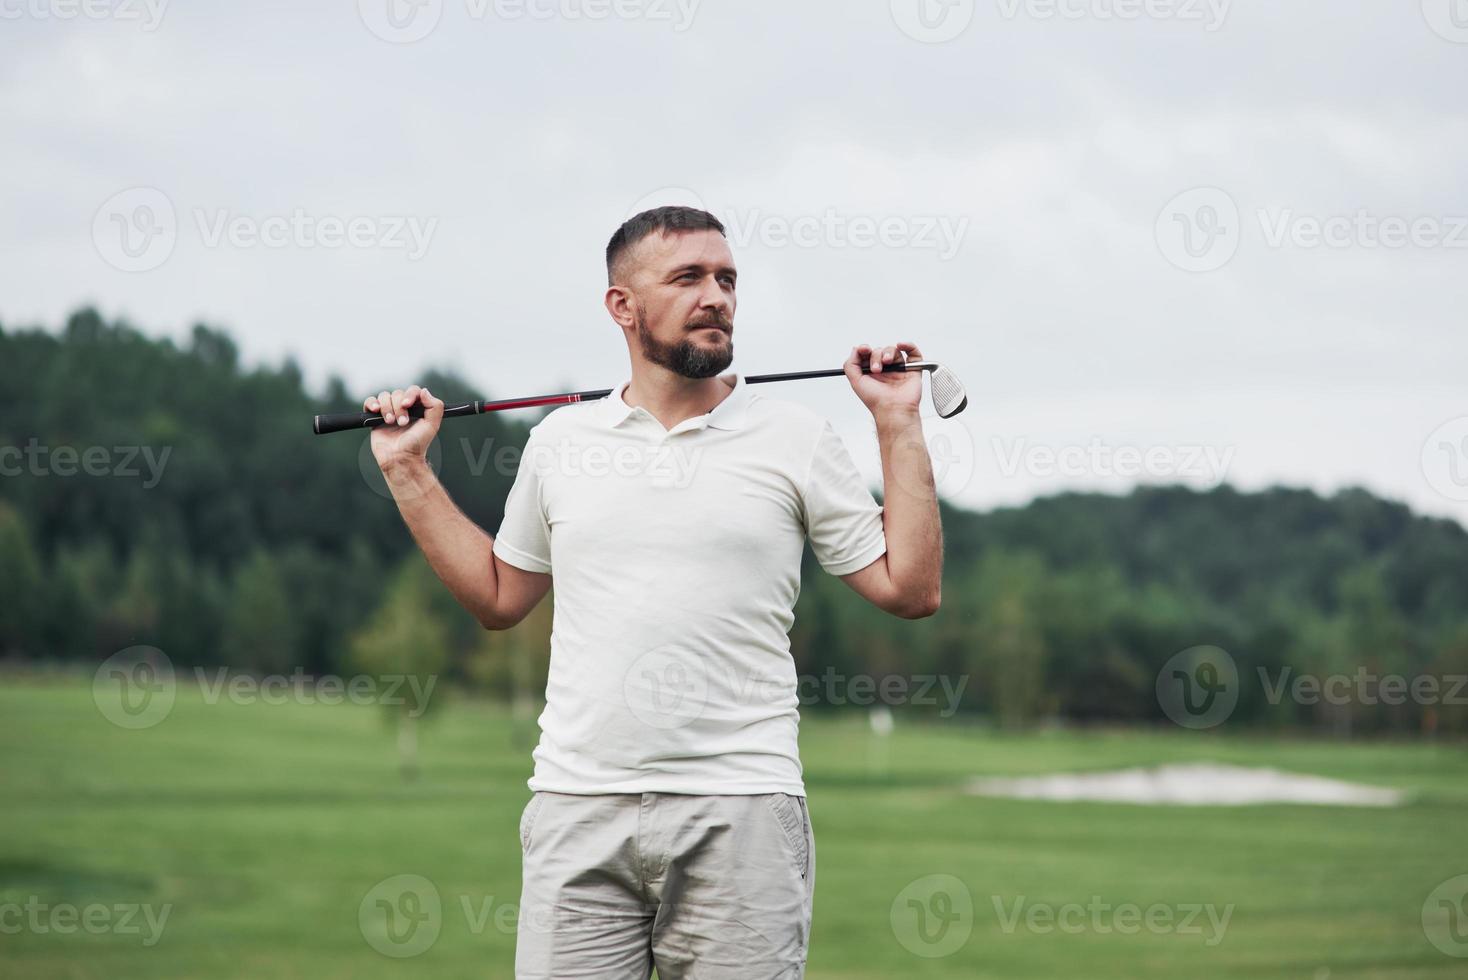 olhando para longe. retrato do jogador de golfe em pé no gramado e taco na mão. bosques no fundo foto